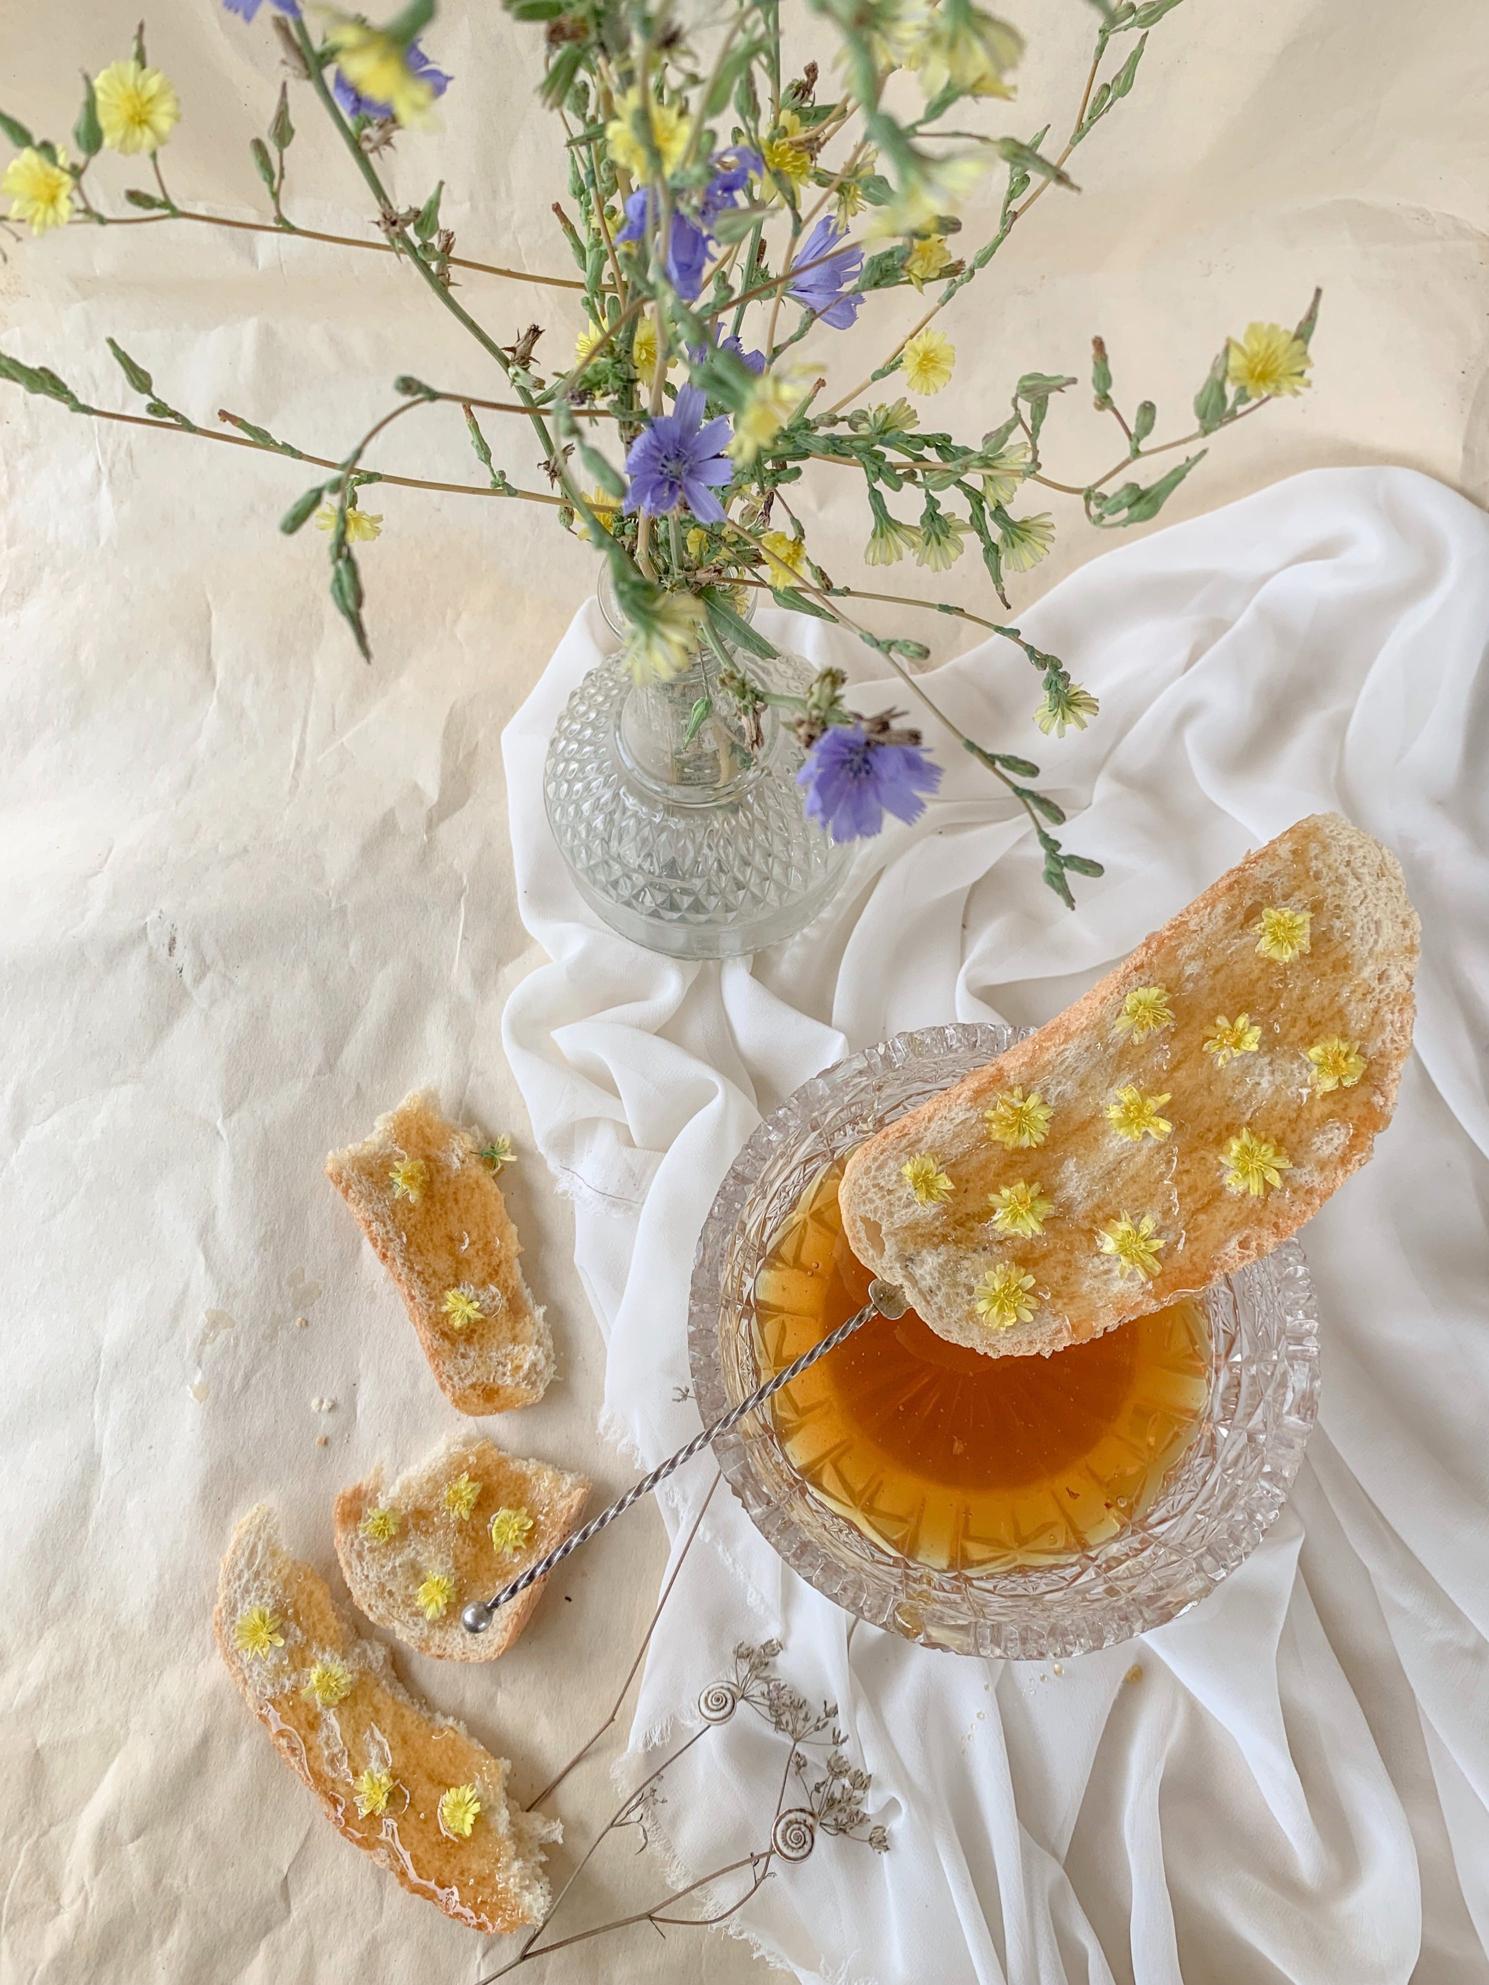 Primi piatti: l'aroma unico del miele di montagna per piatti sorprendenti